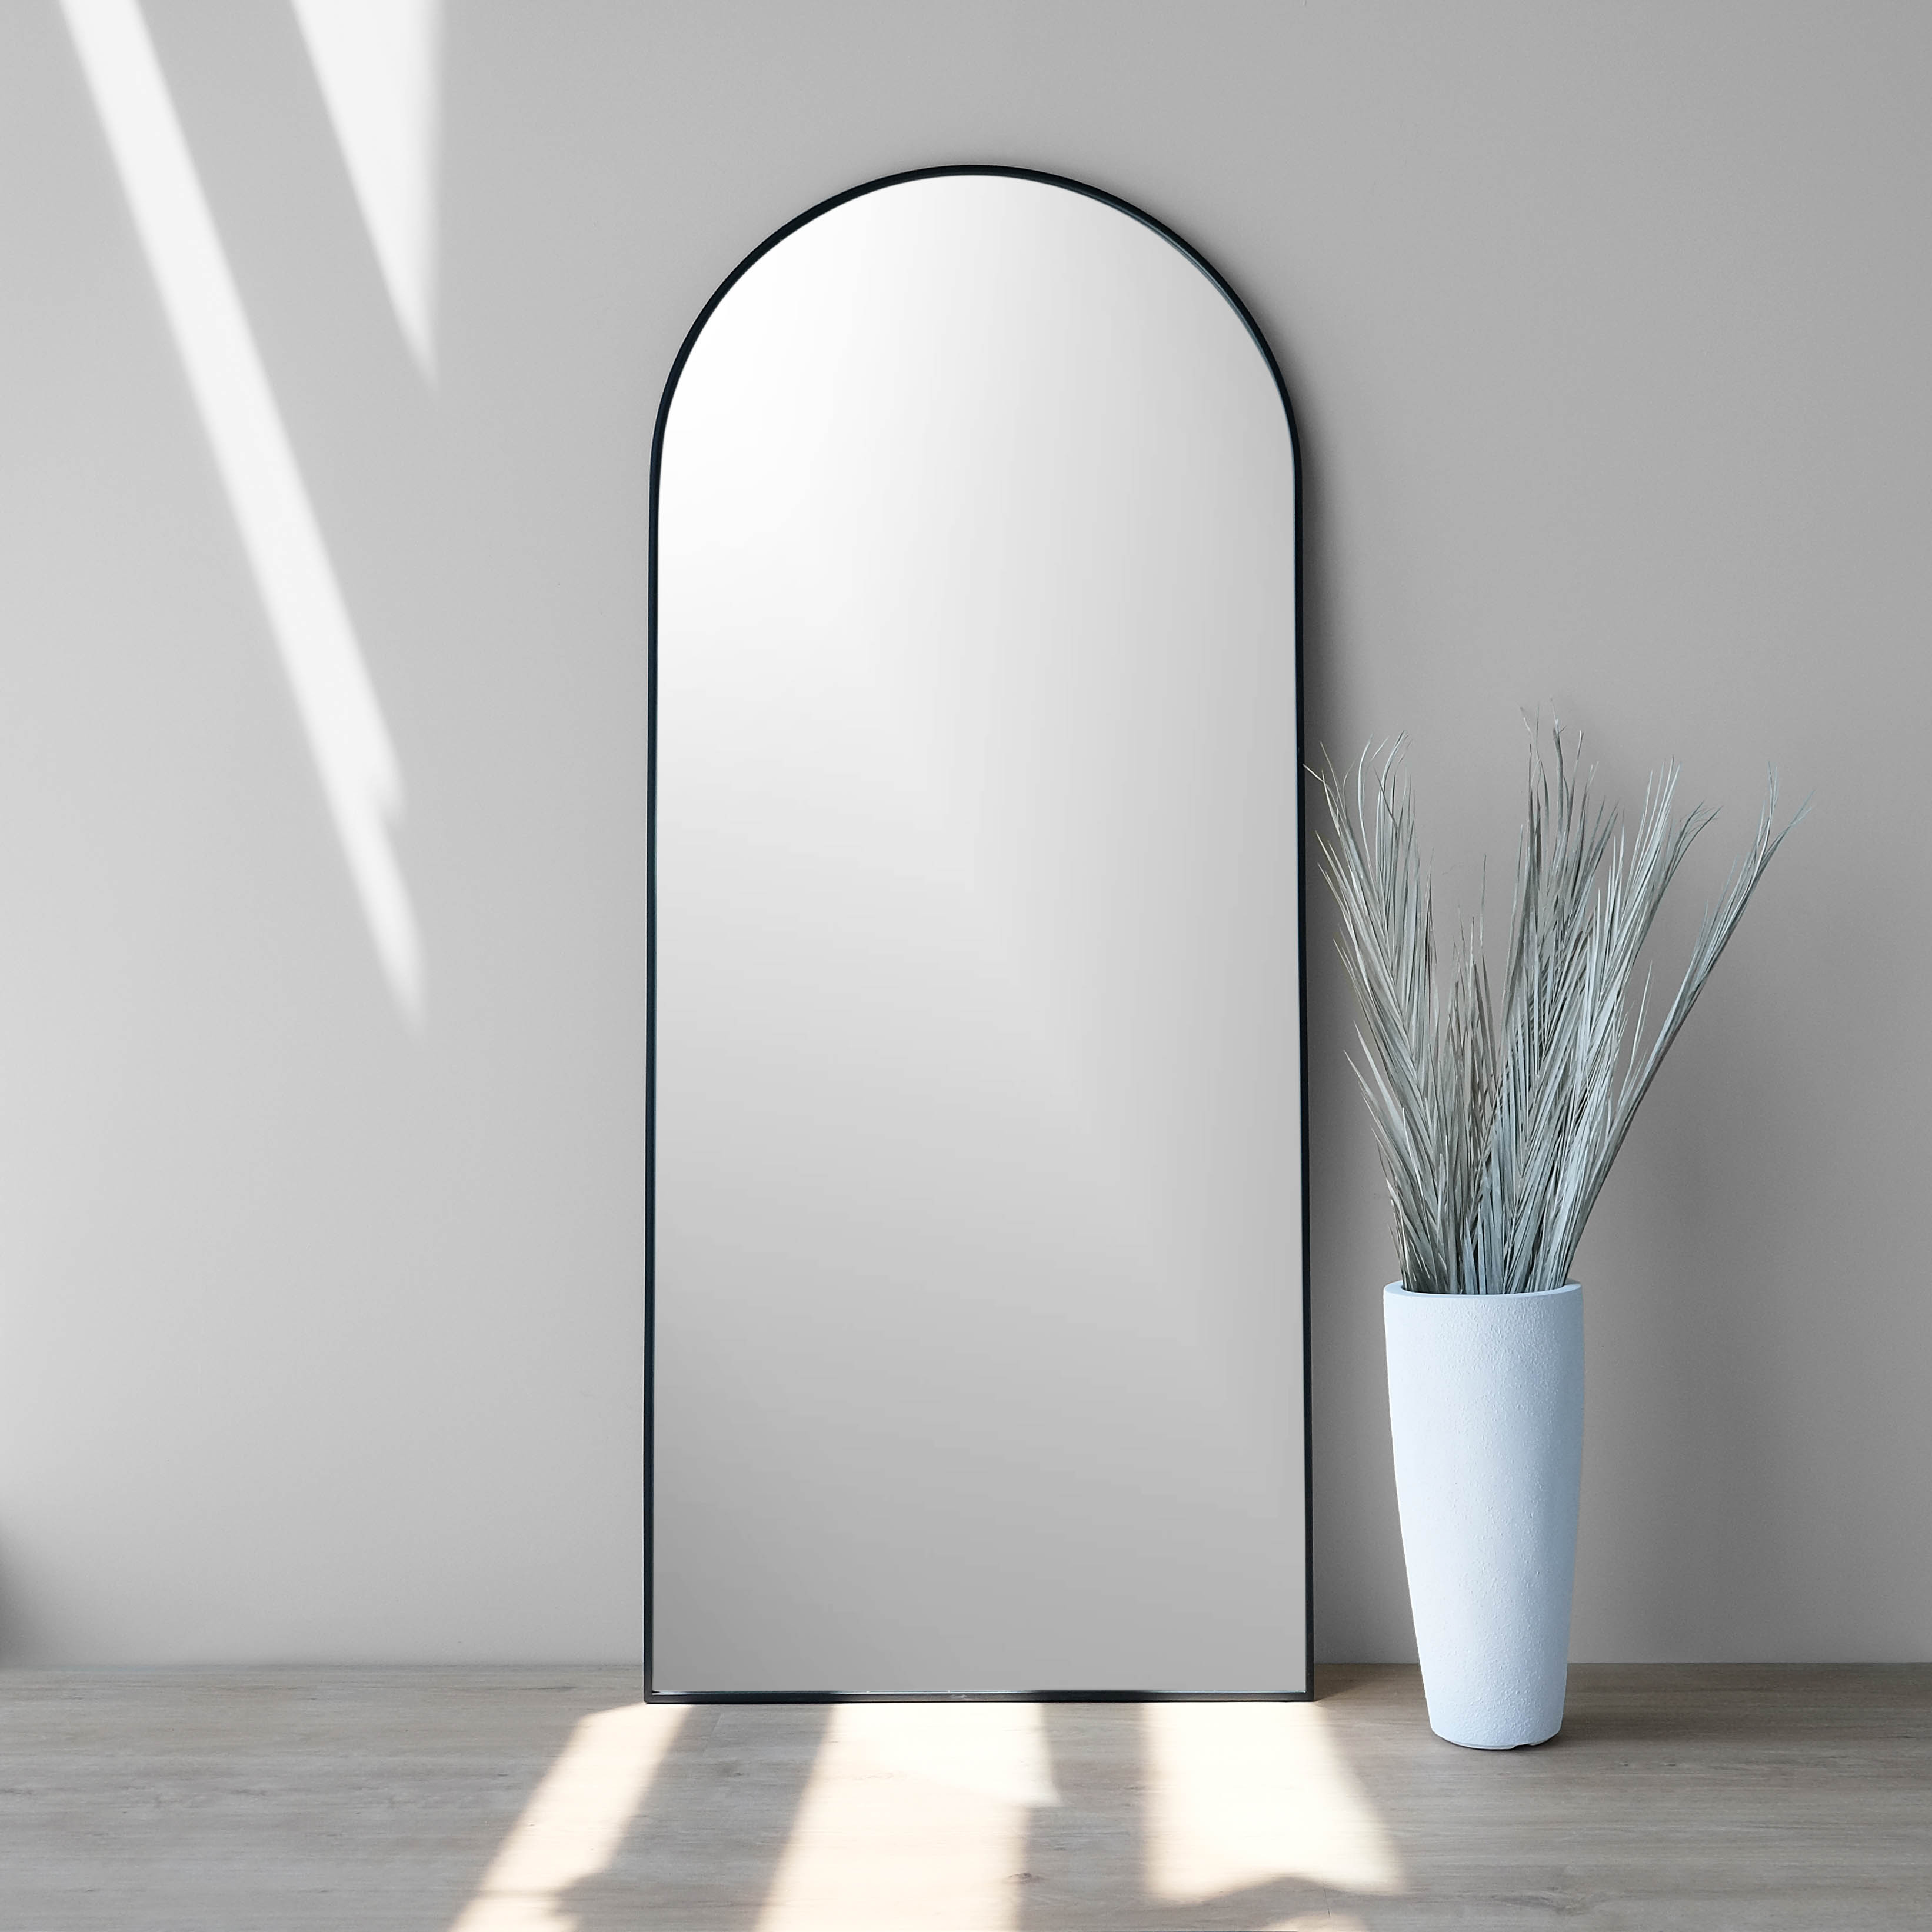 30x70-inch black iron framed arch mirror